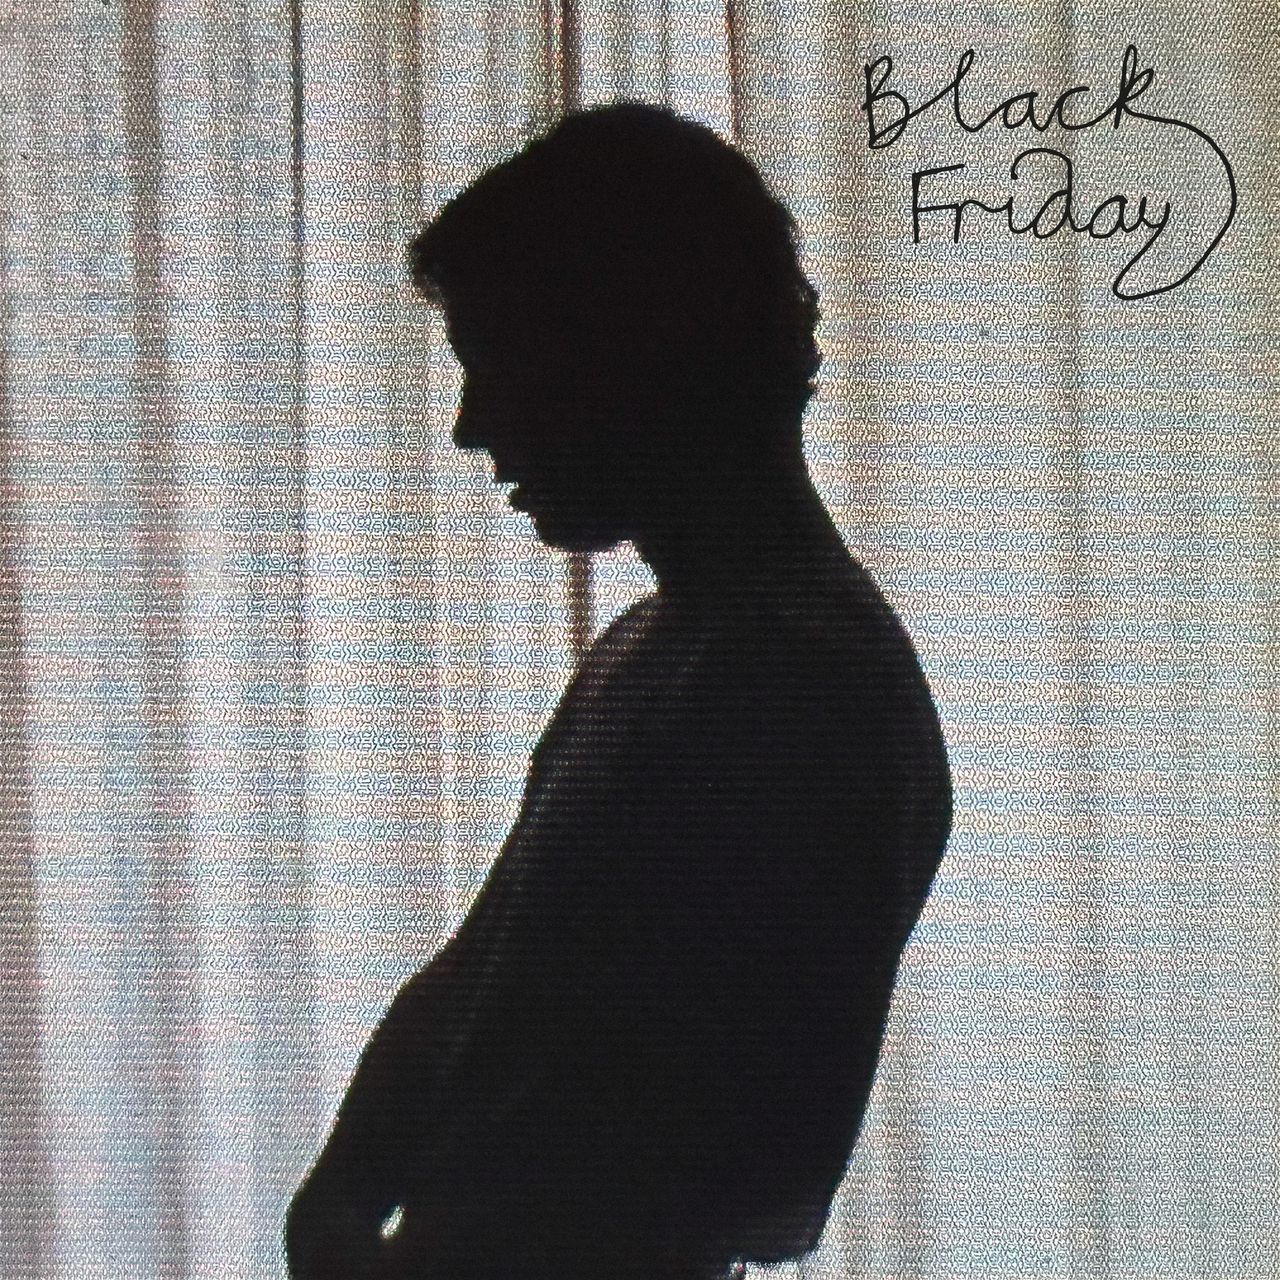 Neues Album von Tom Odell "Black Friday"